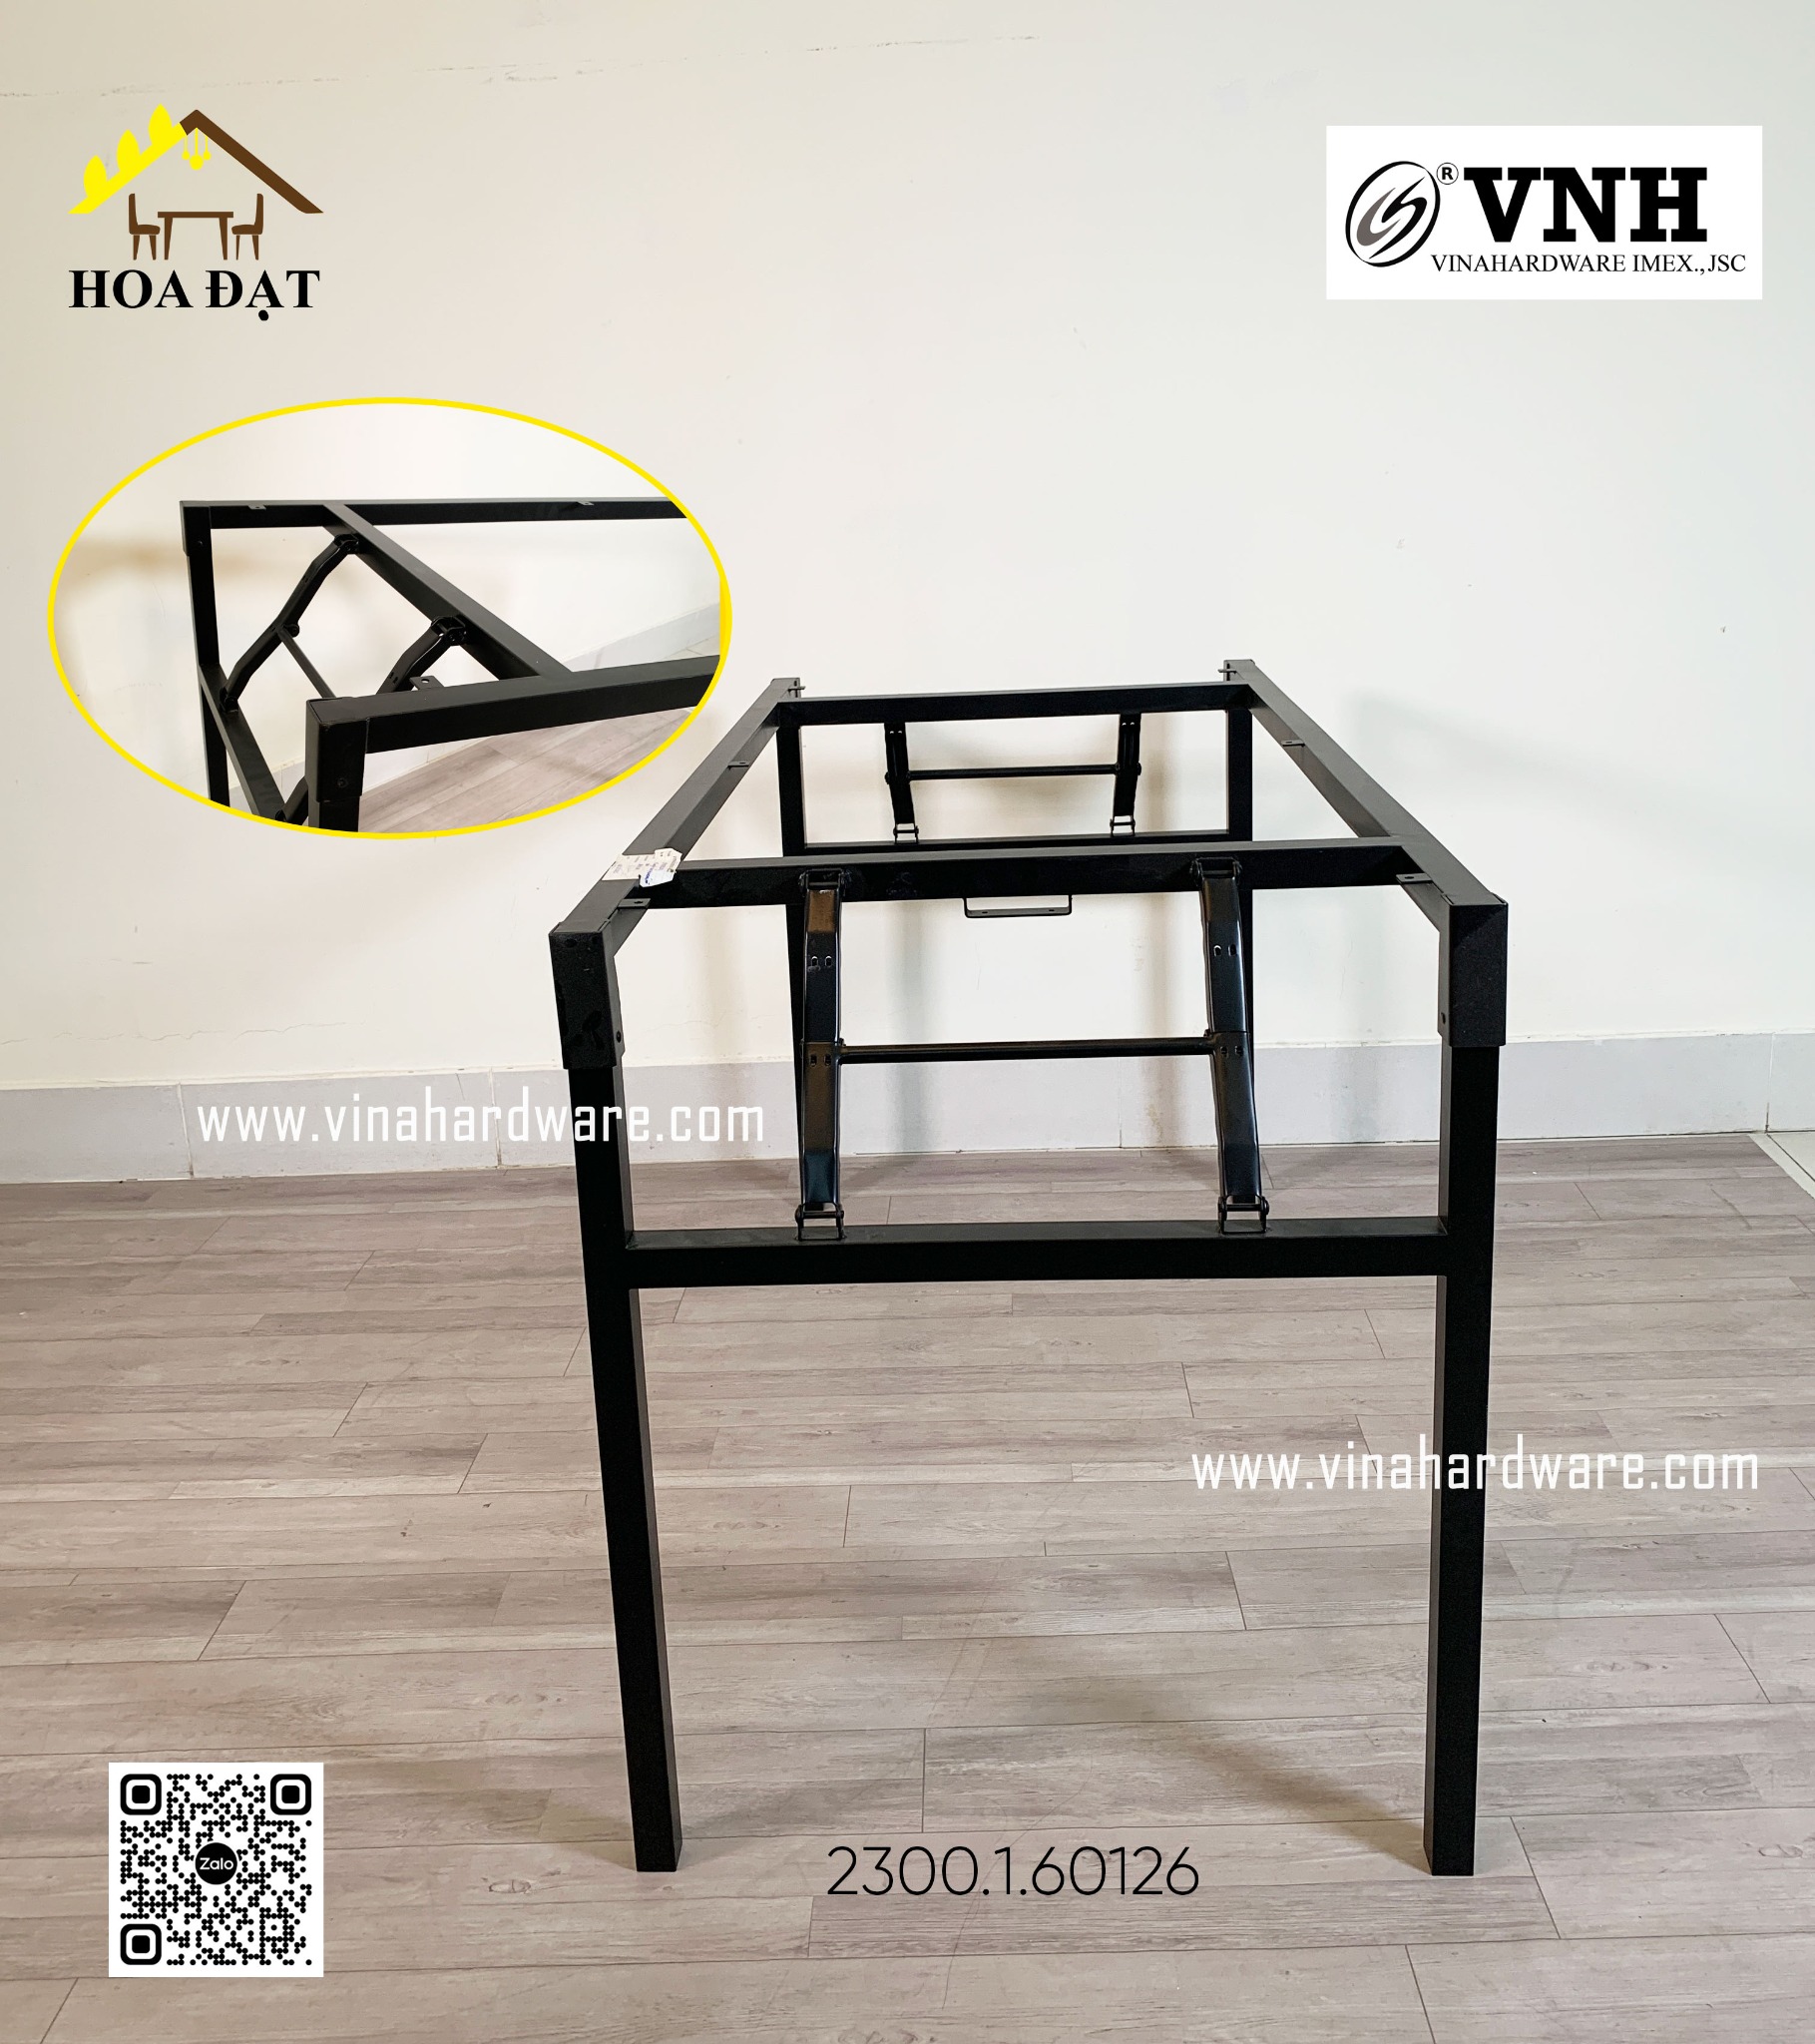 Khung bàn xếp gọn quán ăn sơn đen tĩnh điện - VNH6001200B